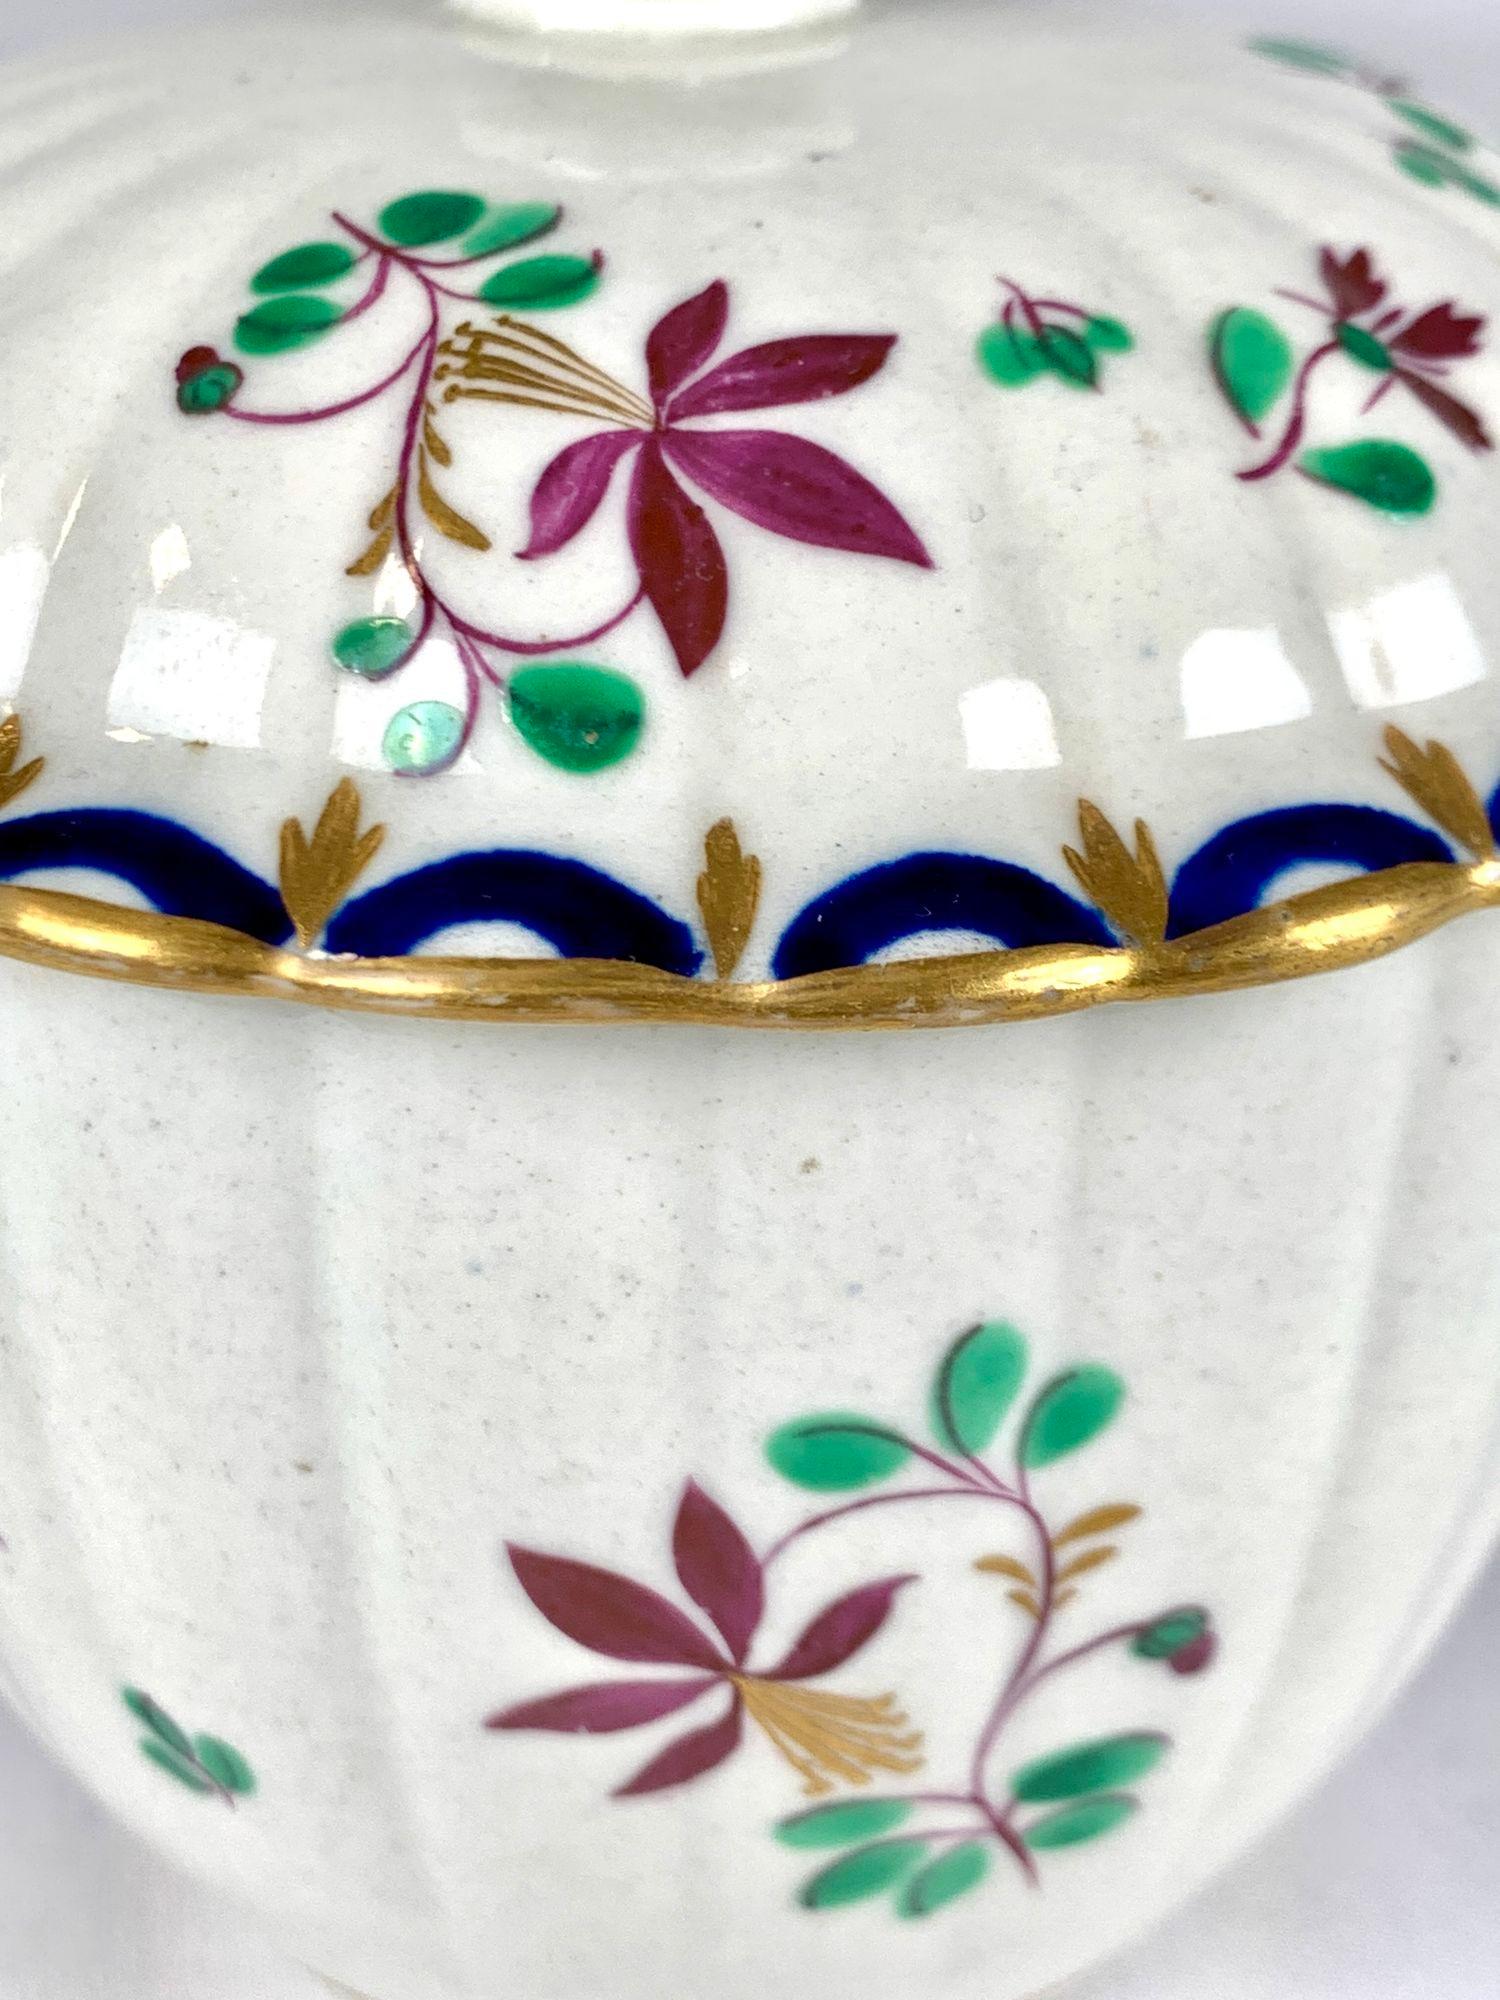 Dies ist eine handbemalte Zuckerdose aus Worcester-Porzellan aus dem 18. Jahrhundert.
Das lebendige Blumenmuster ist in Grün, Blau, Lila und Gold gehalten.
Wir sehen violette Stängel und violette Blüten mit vergoldeten Staubgefäßen, zusammen mit